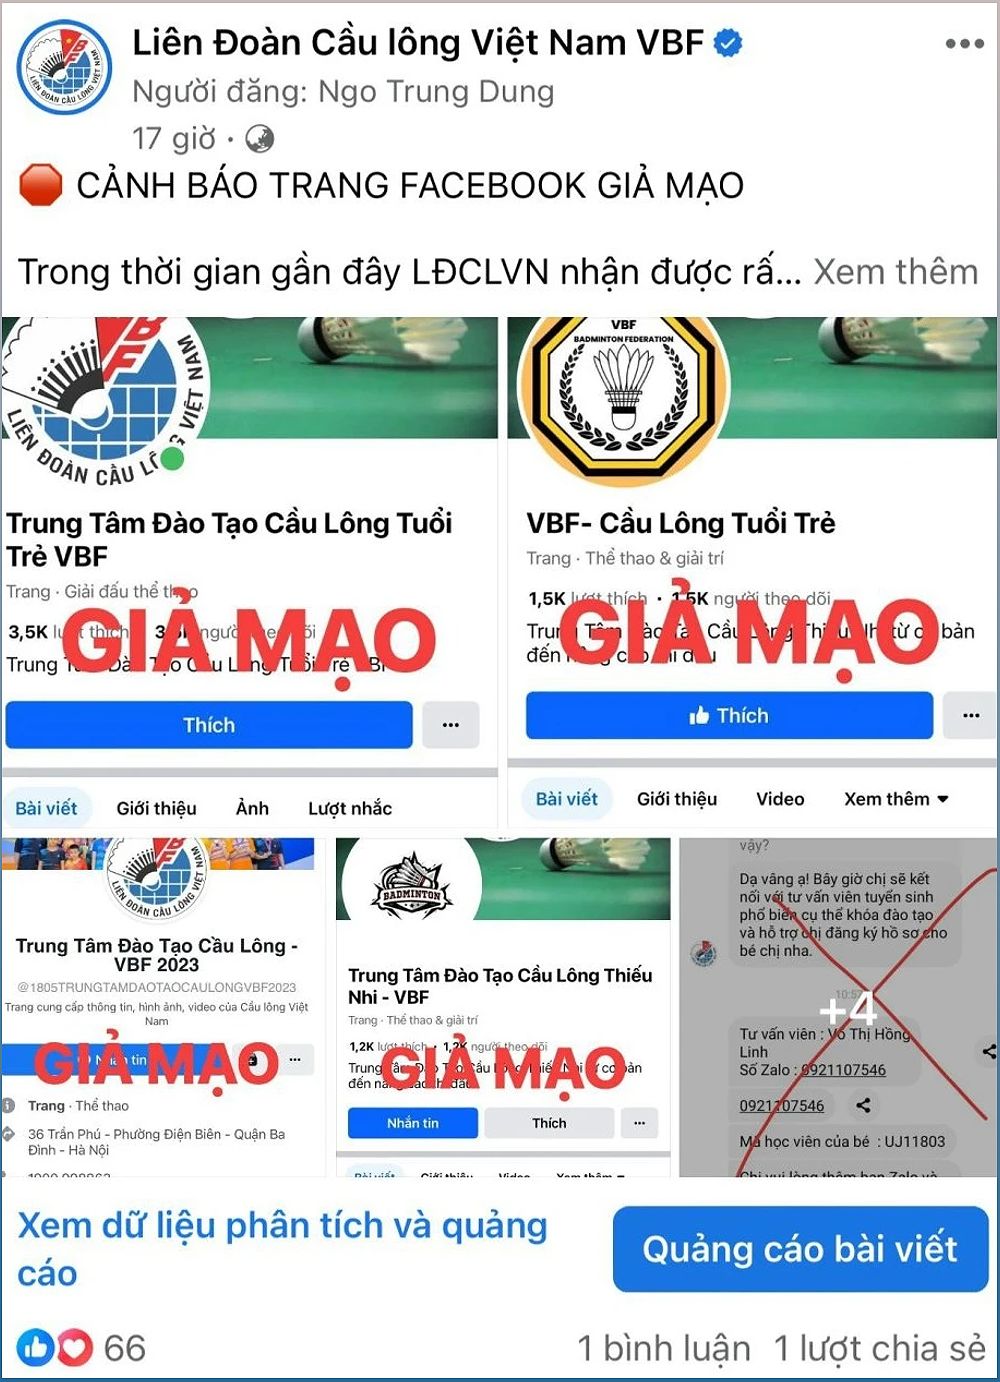 Cảnh báo về thông tin giả mạo và lừa đảo của Liên đoàn cầu lông Việt Nam - 1676877106